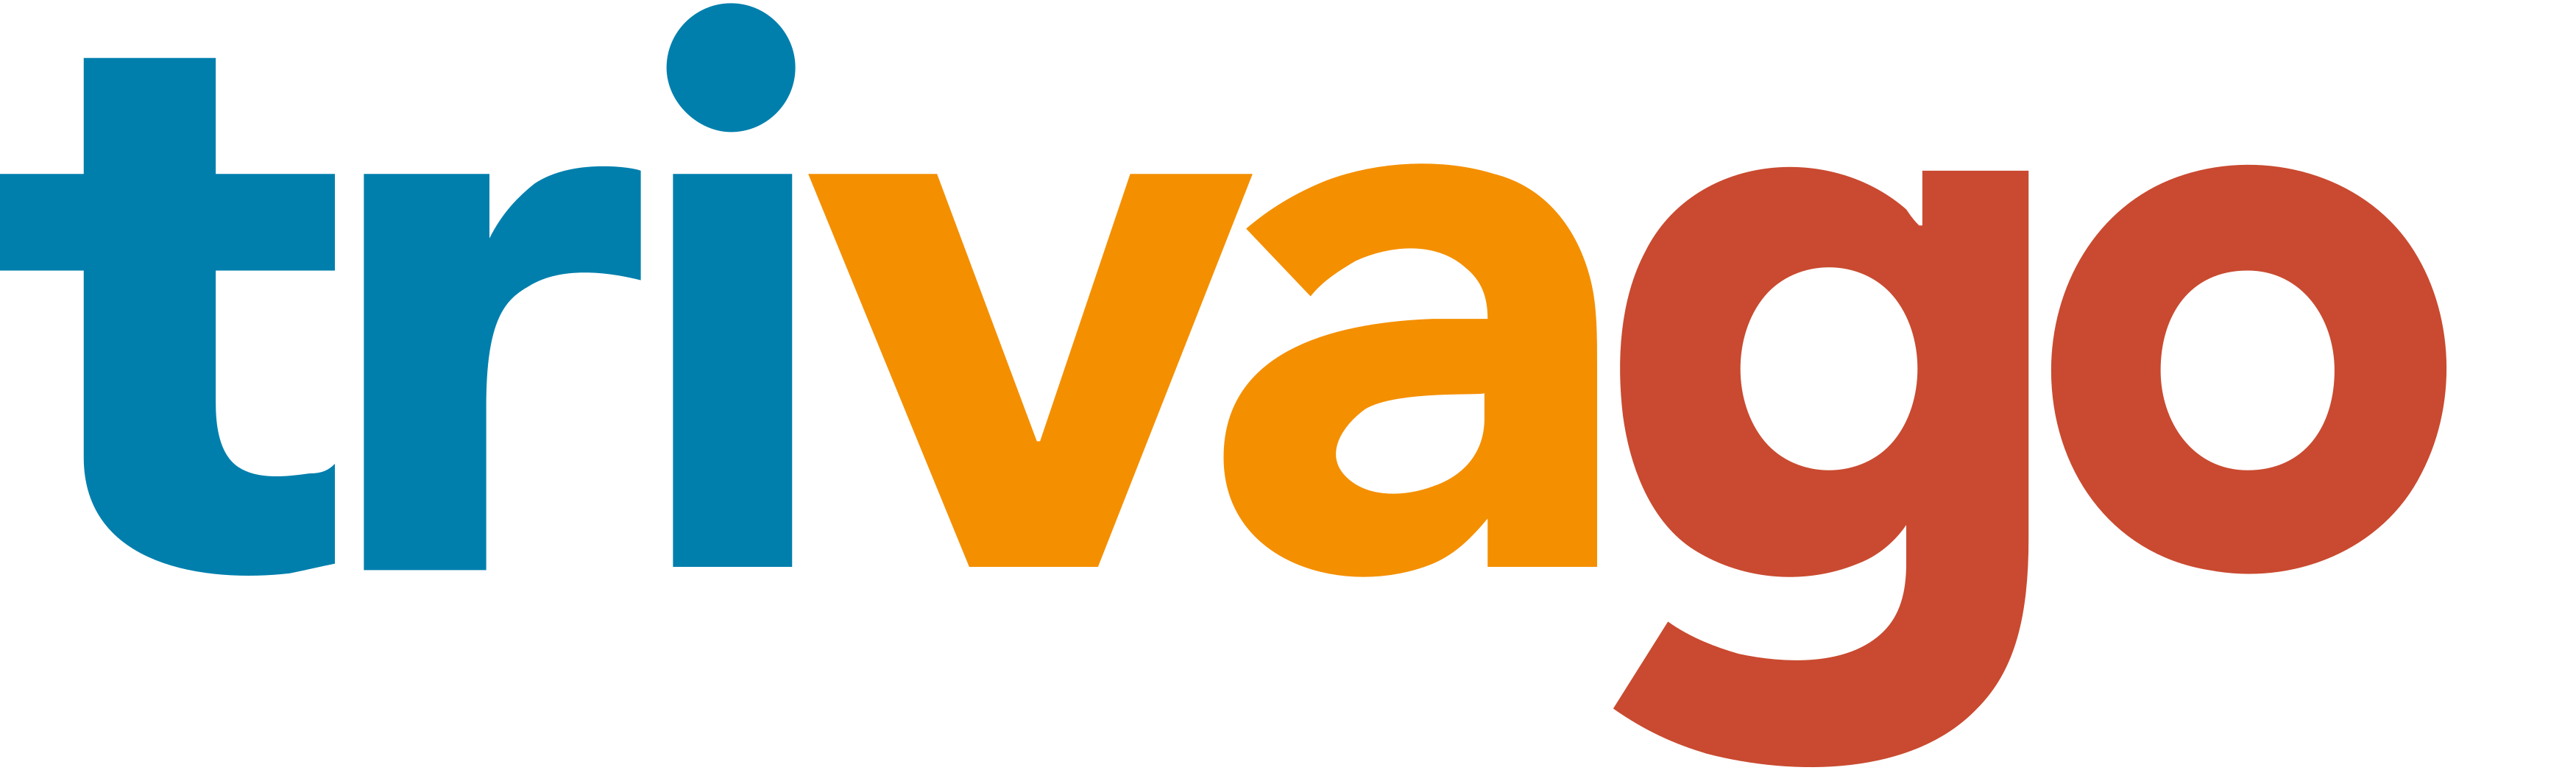 Trivago Logo 1 